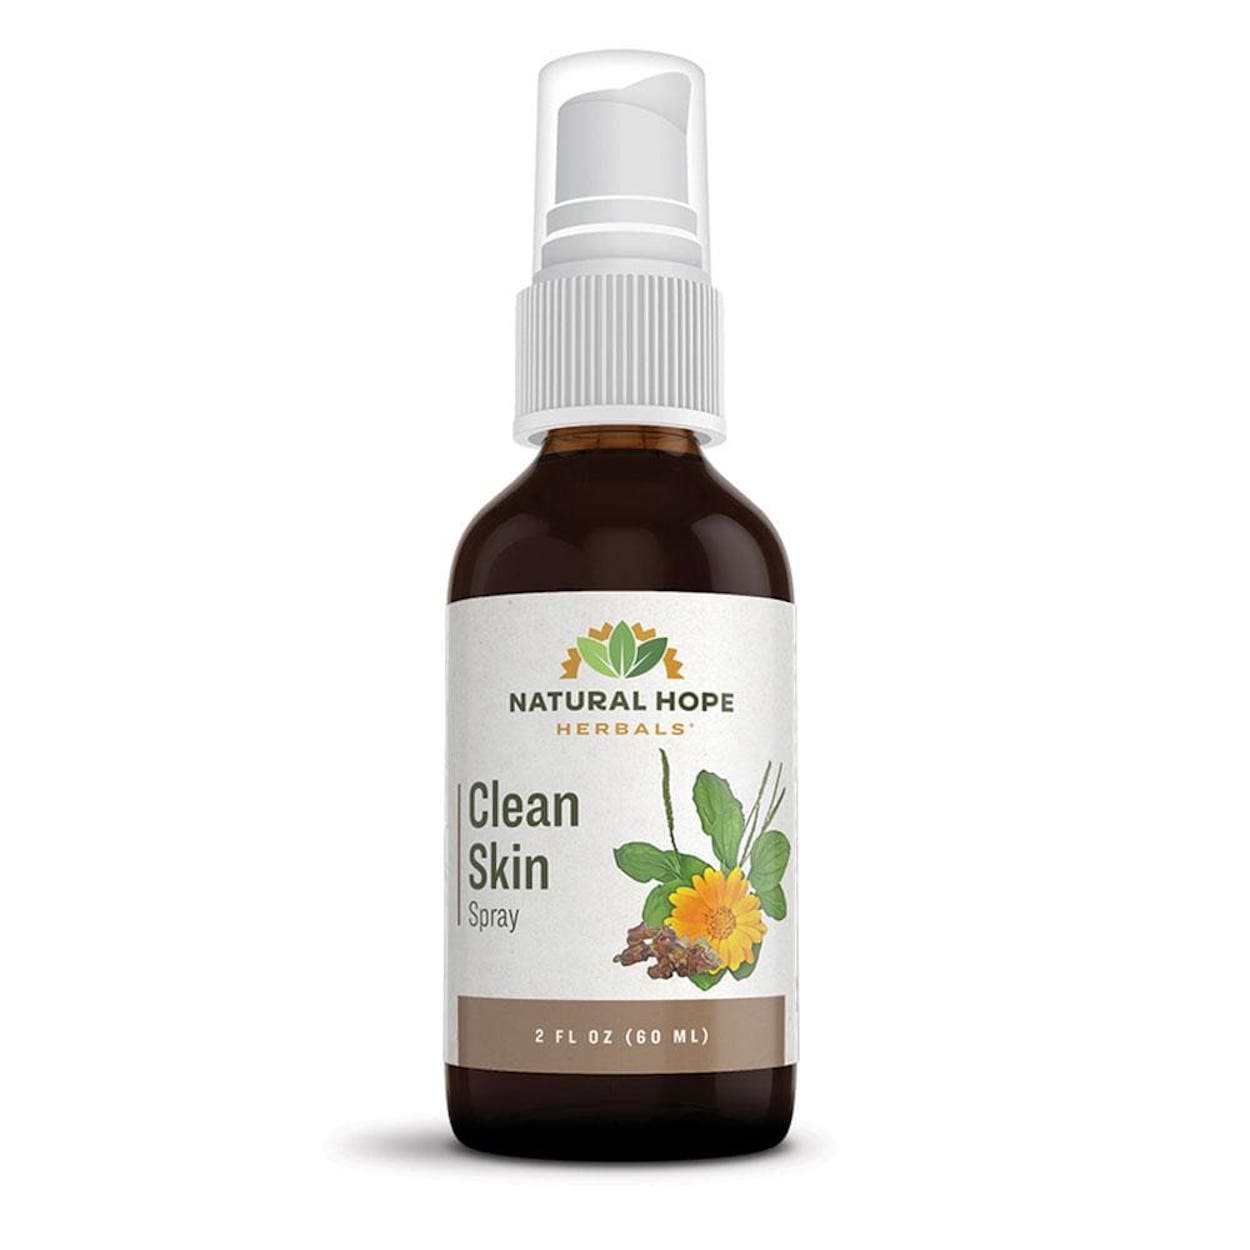 Clean Skin Spray - Natural Hope Herbals